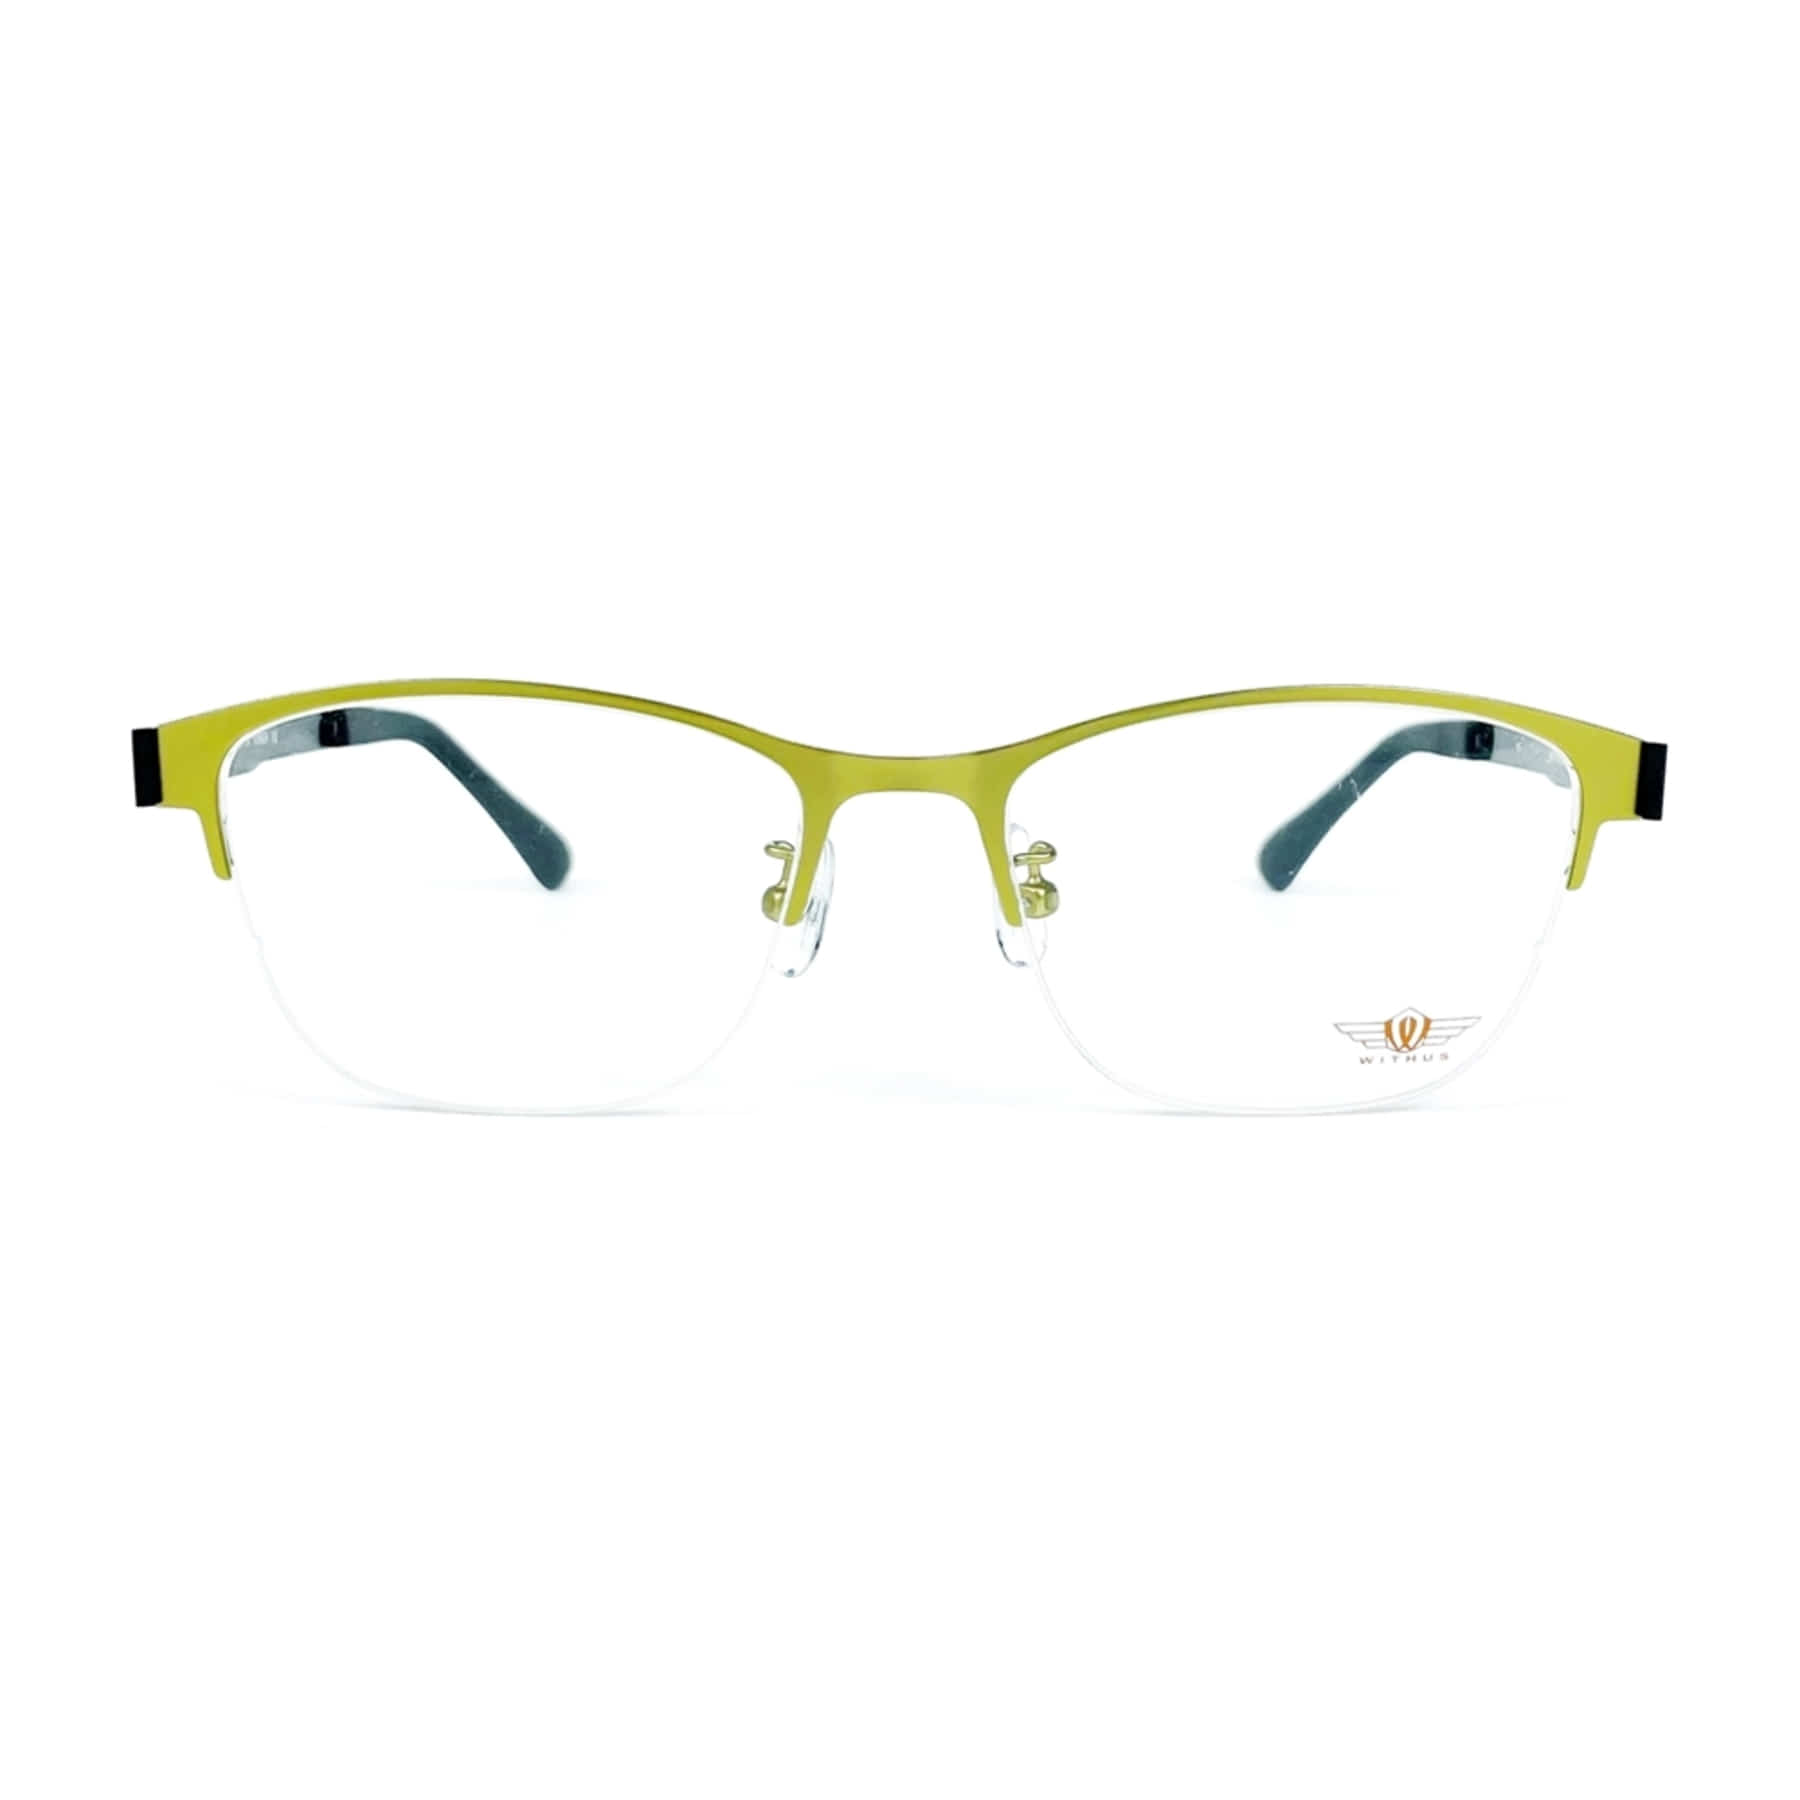 WITHUS-7278, Korean glasses, sunglasses, eyeglasses, glasses